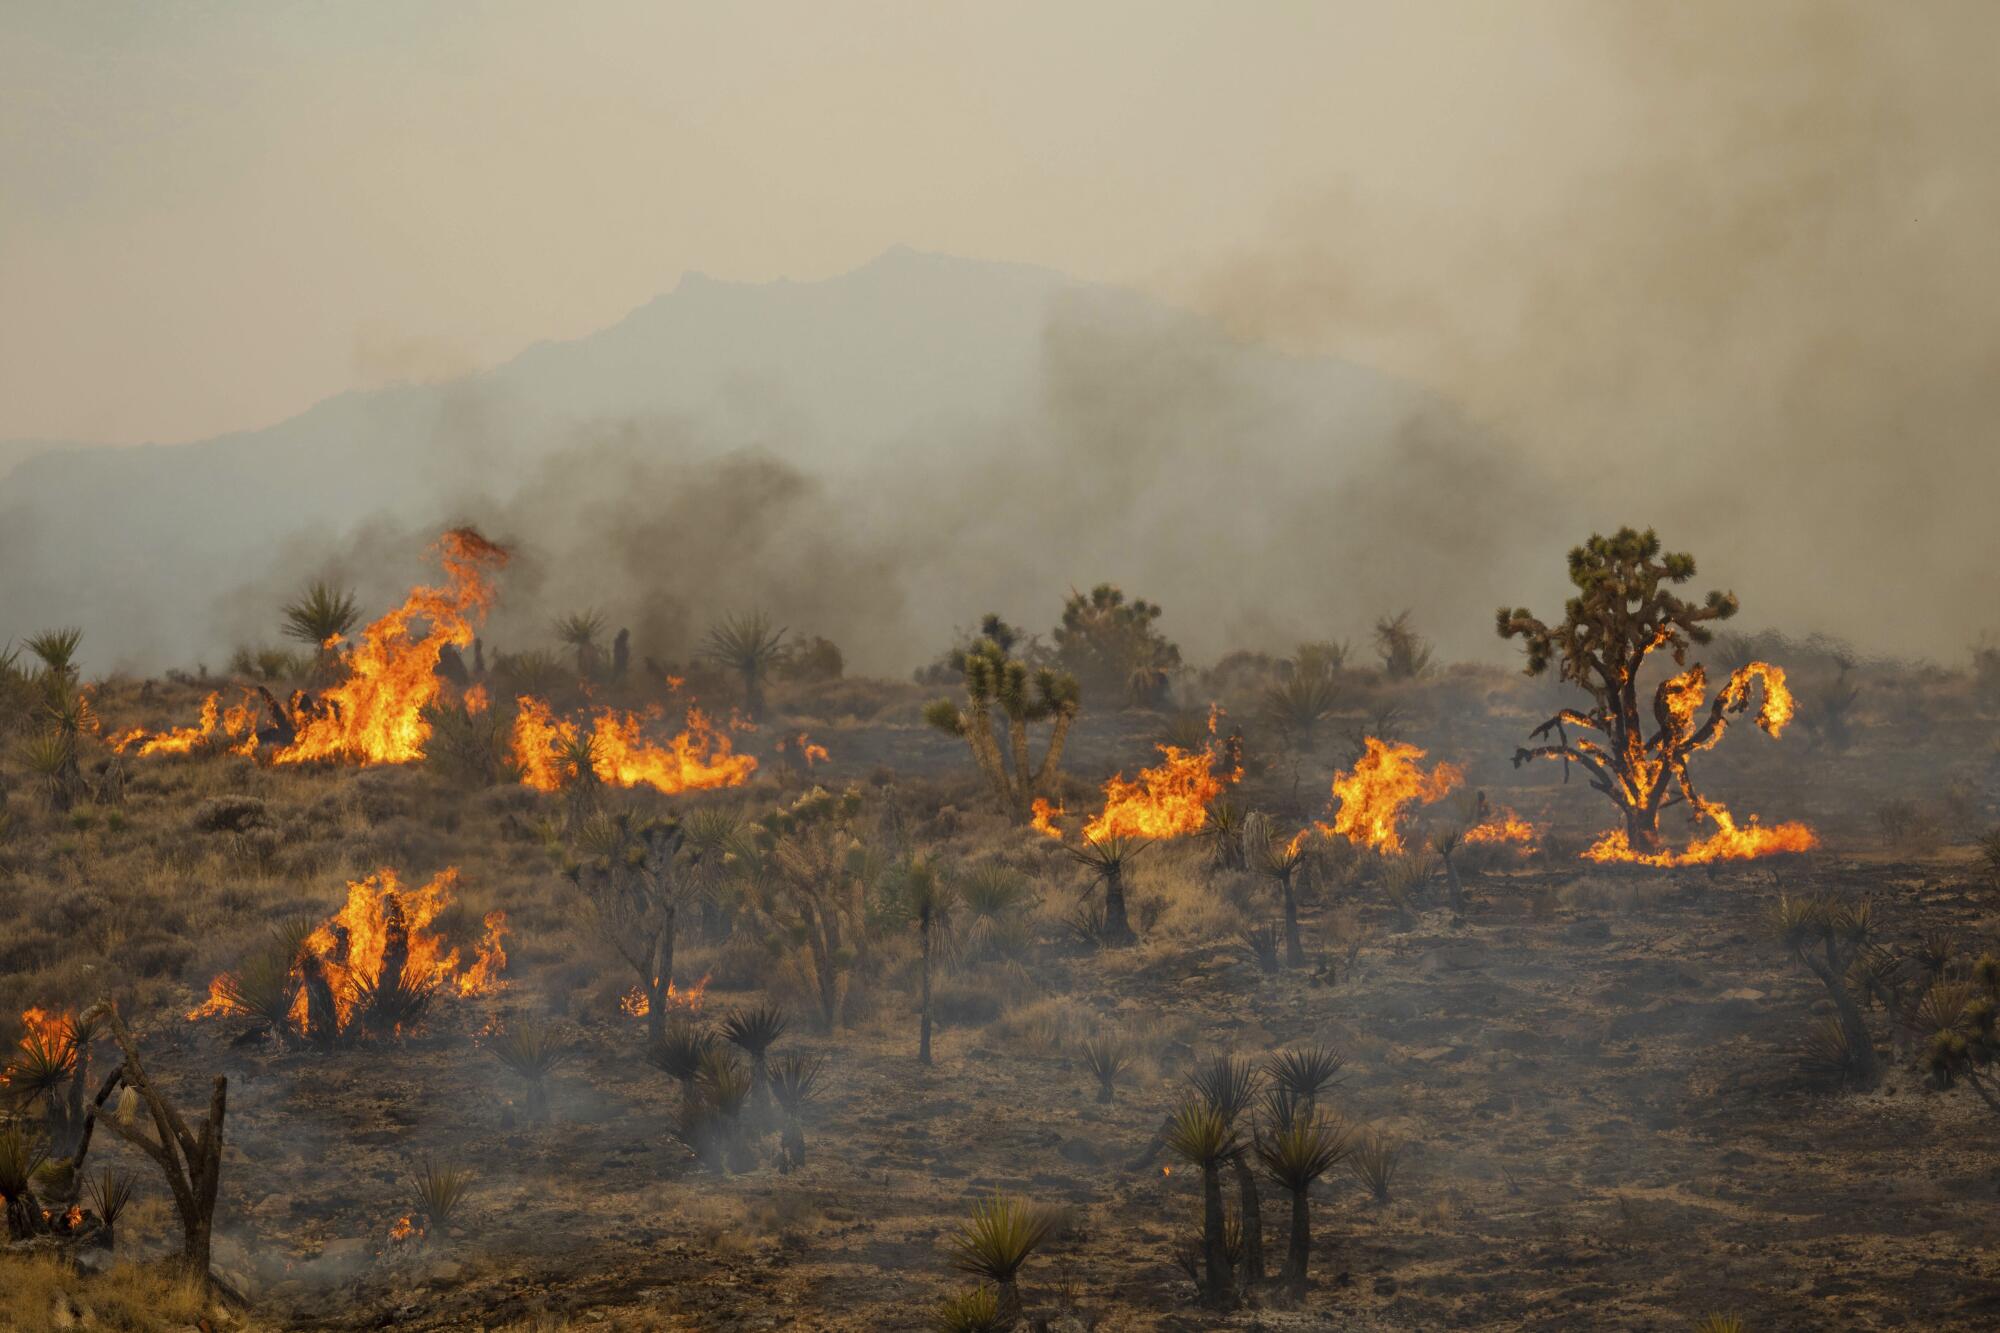 Joshua Trees burn in the desert.